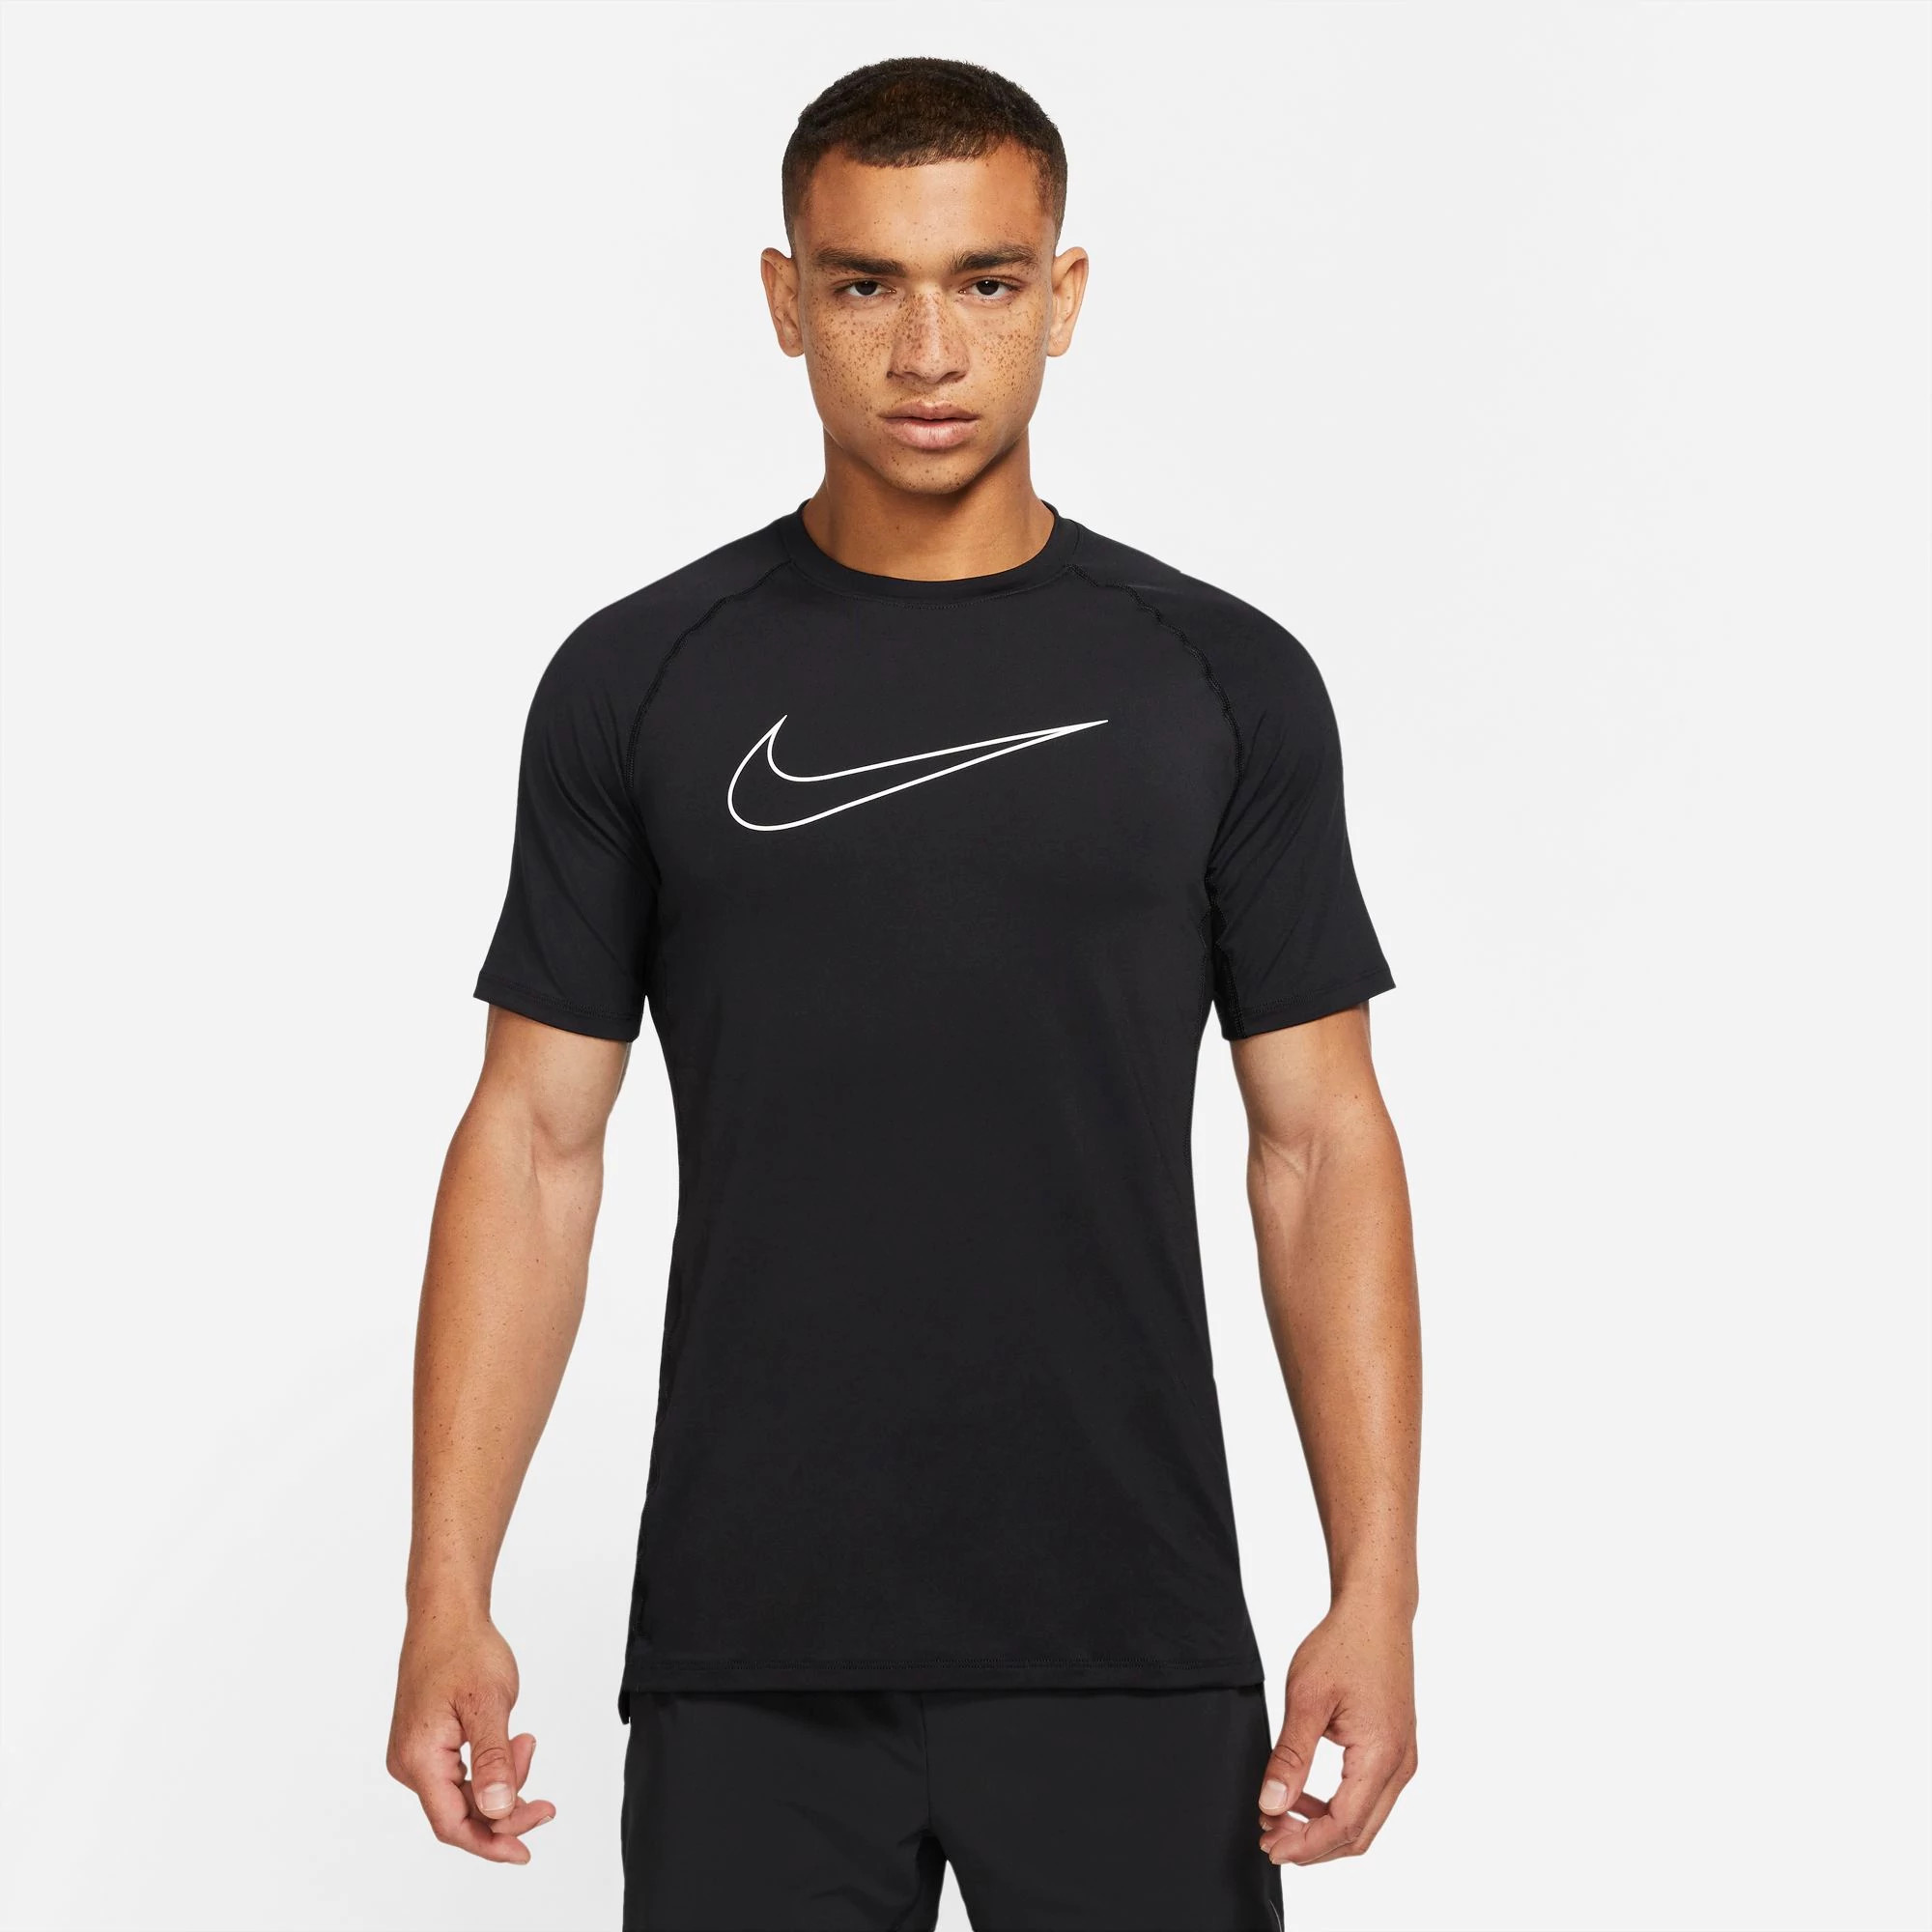 Nike Training Pro Dri-FIT slim-fit tank top in black